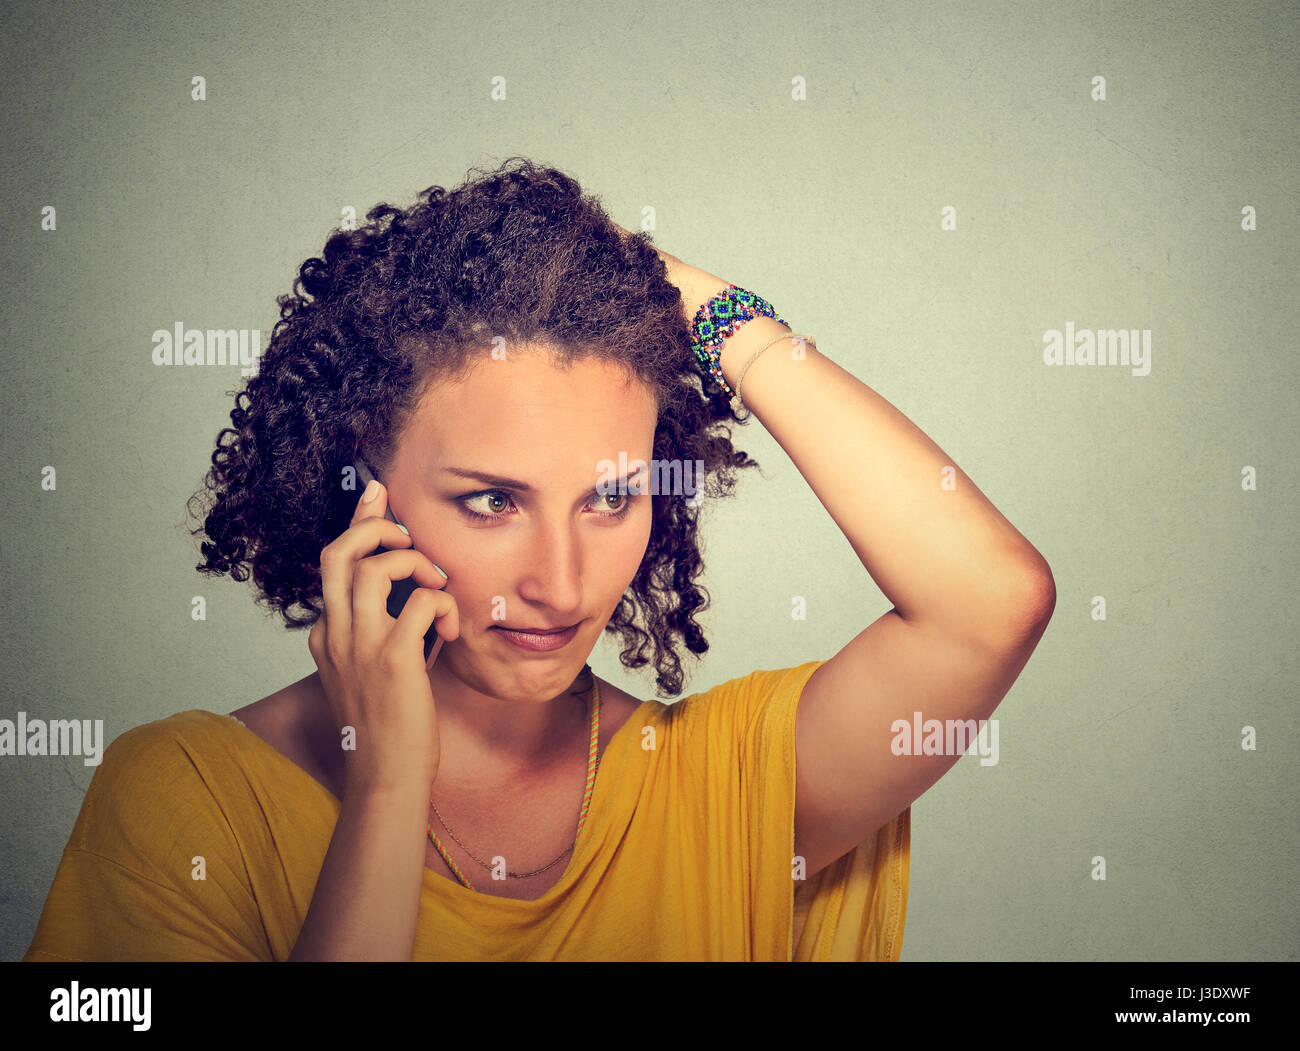 Das Porträt ist unglücklich, dass die junge Frau am Handy schaut gestresst auf graue Wand Hintergrund isoliert. Menschlichen Gesichtsausdruck, Emotionen, schlechte Nachrichten Stockfoto